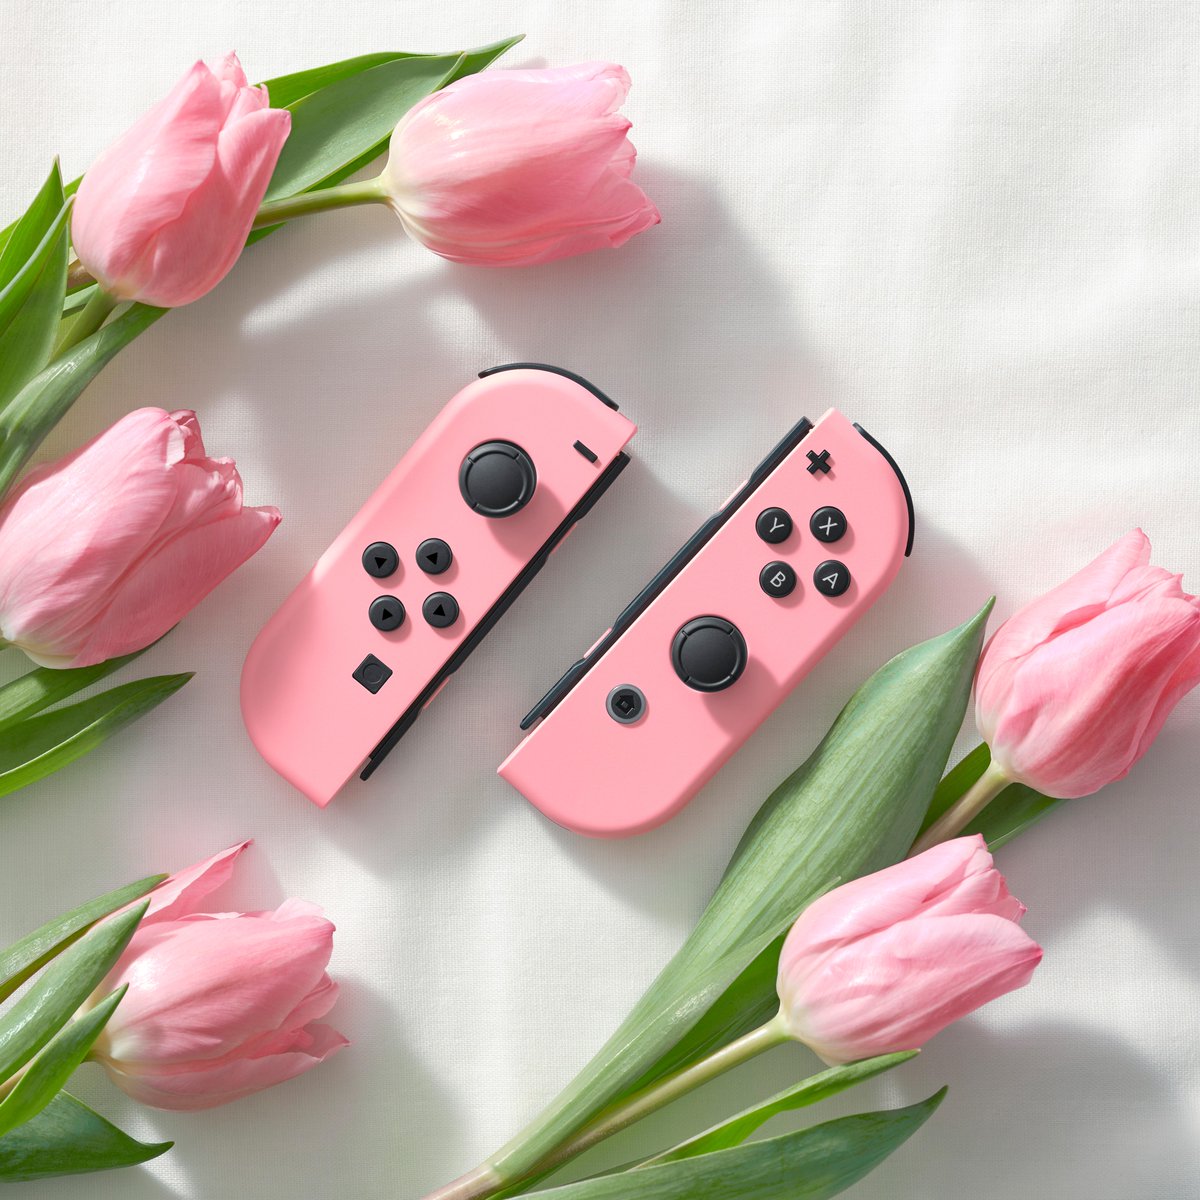 Princess Peach - My Nintendo Store - Nintendo Official Site